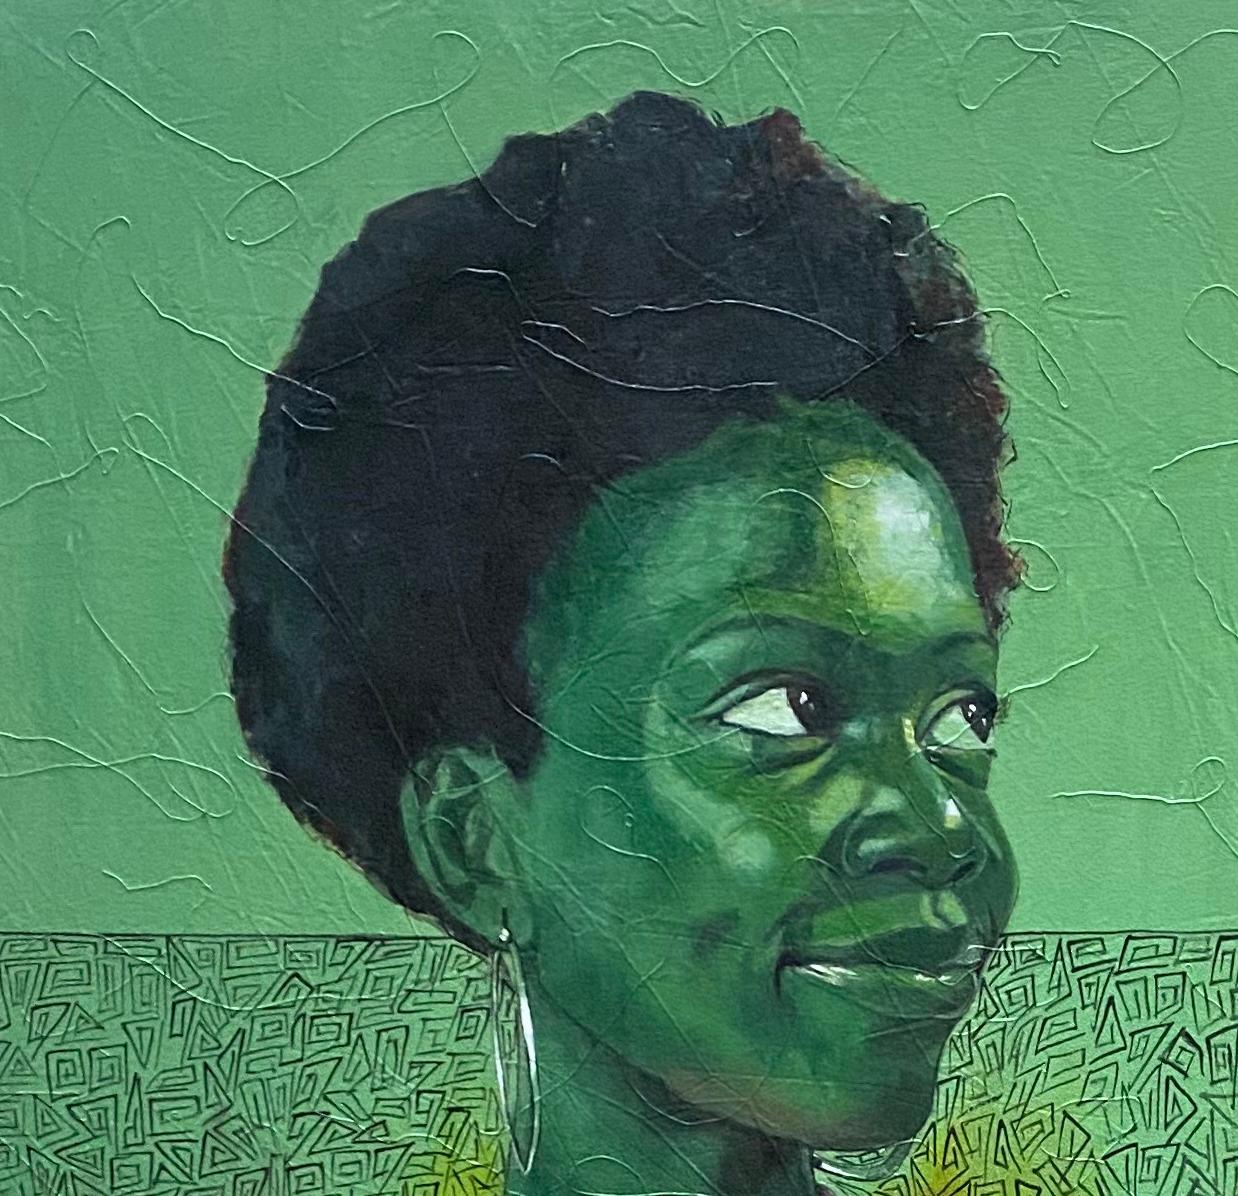 Hopeful - Painting by Emmanuel Amiolemen